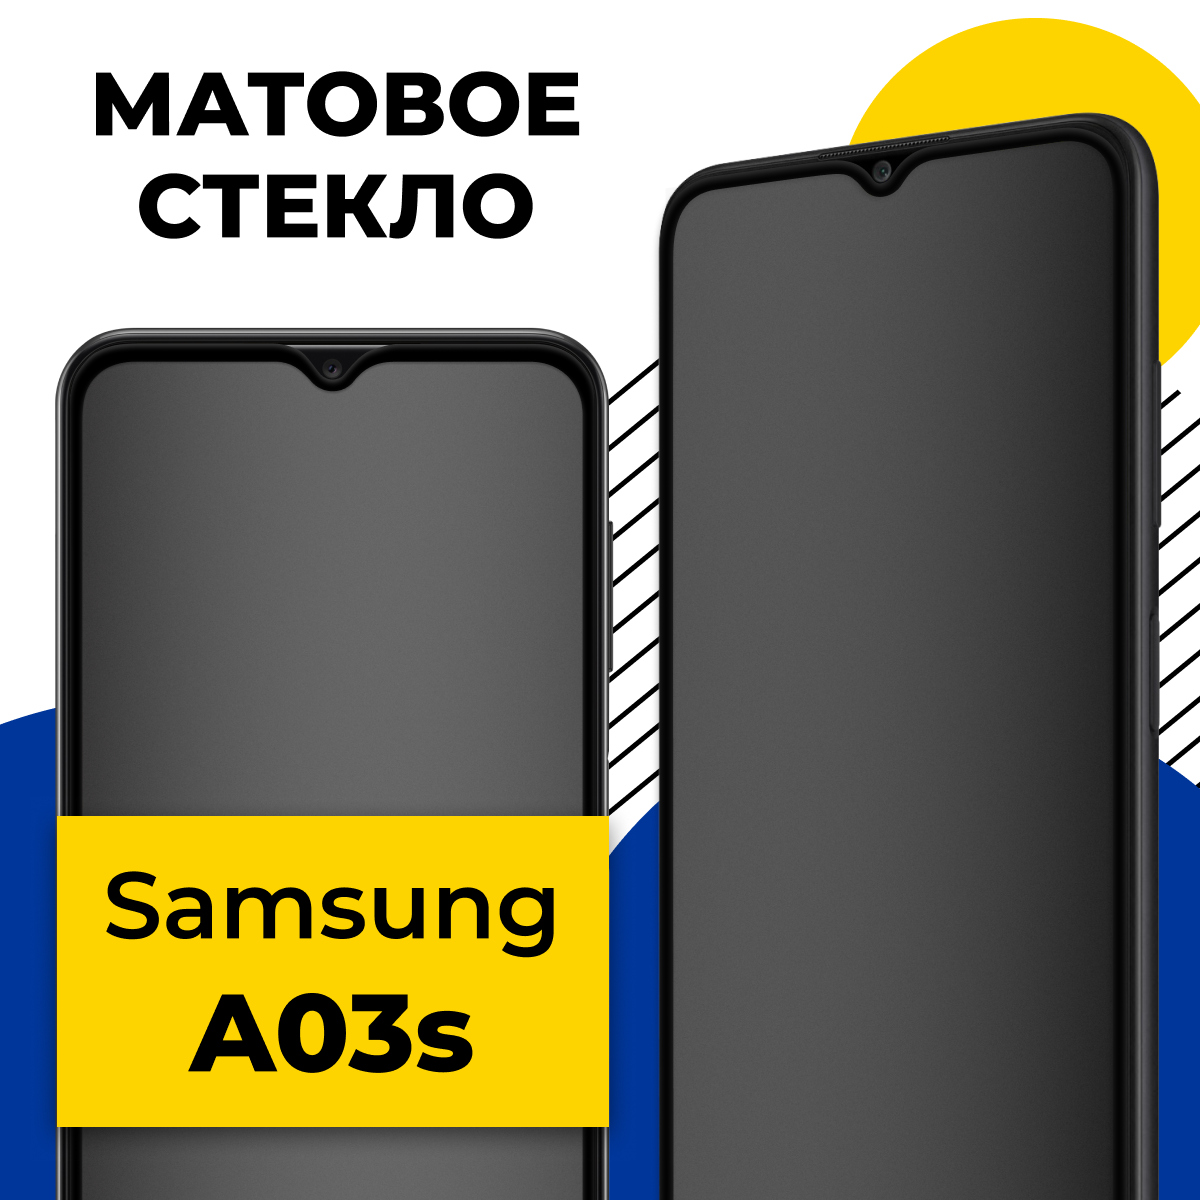 Матовое защитное стекло для телефона Samsung Galaxy A03S / Противоударное стекло 2.5D на смартфон Самсунг Галакси А03С с олеофобным покрытием